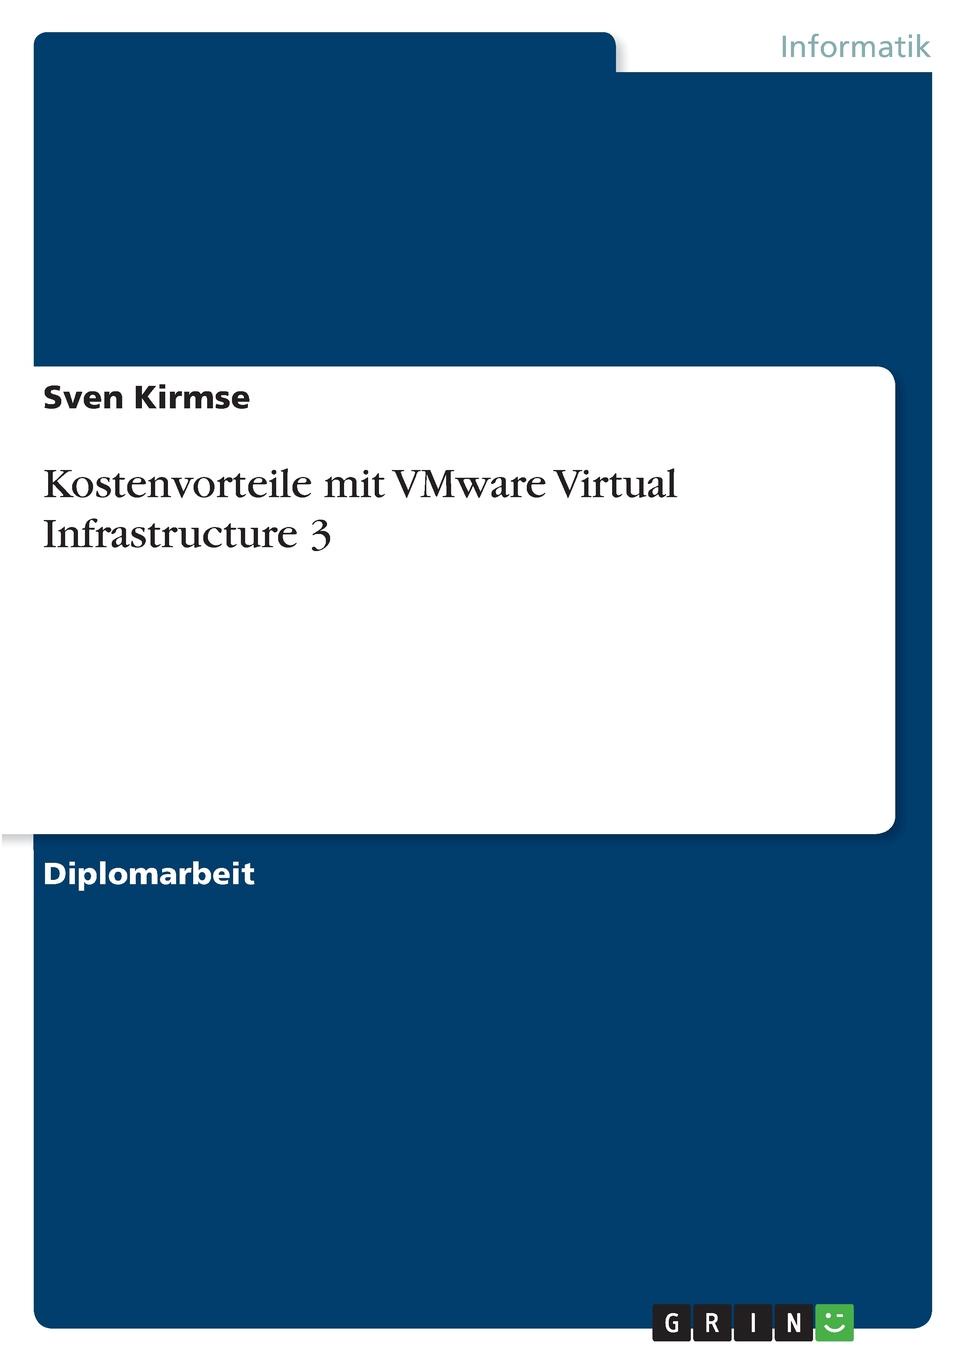 Kostenvorteile mit VMware Virtual Infrastructure 3